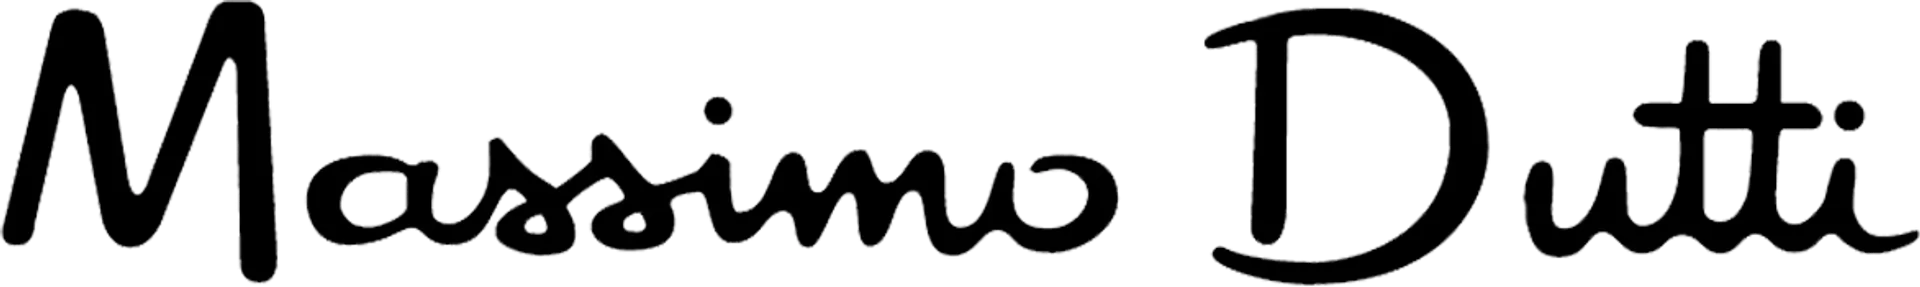 MASSIMO DUTTI logo of current catalogue